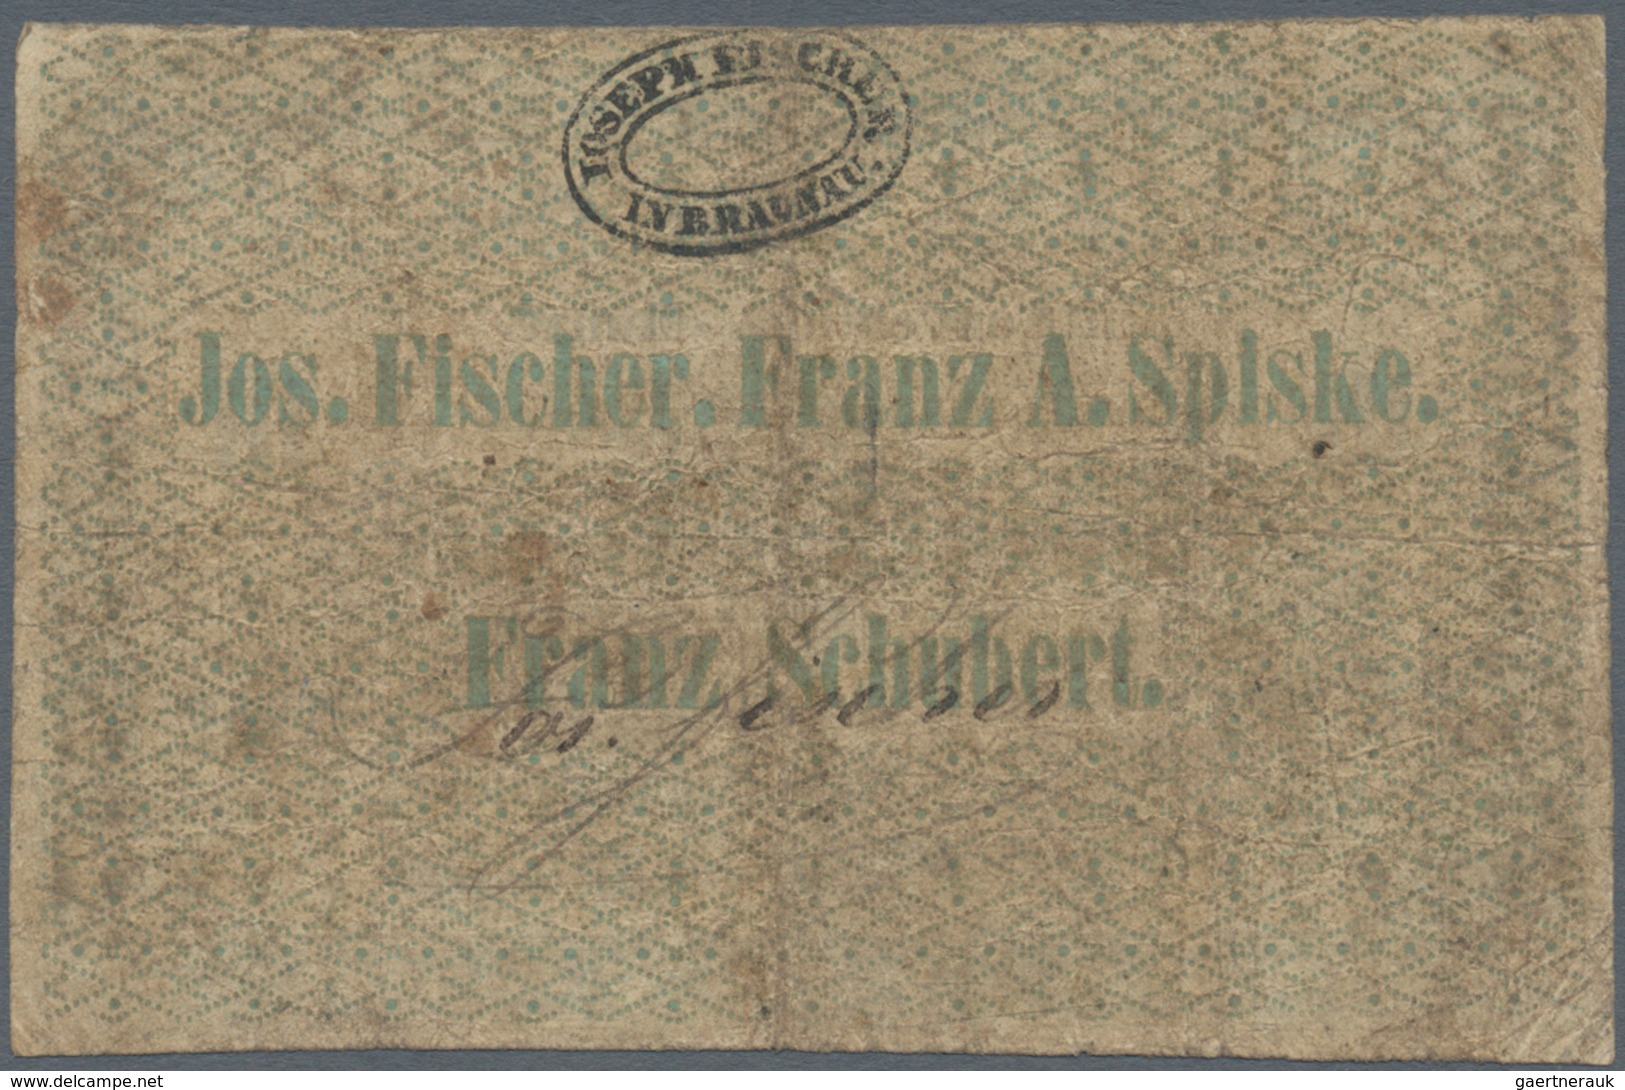 01089 Austria / Österreich: Braunau, 3 Kreuzer Conventions-Münze 1849, P.NL, Stained Paper With Several Fo - Oostenrijk